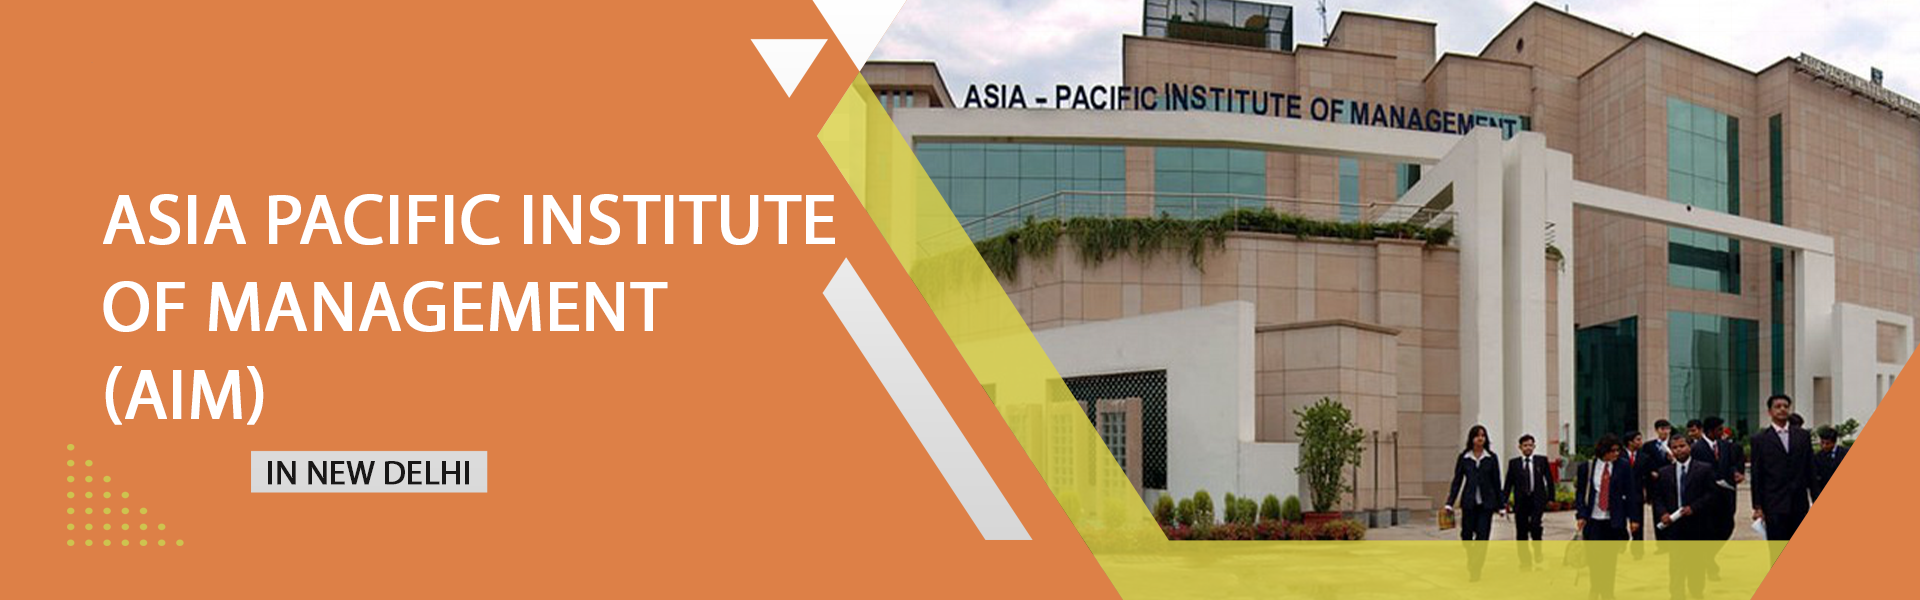 Asia Pacific Institute Of Management (AIM)